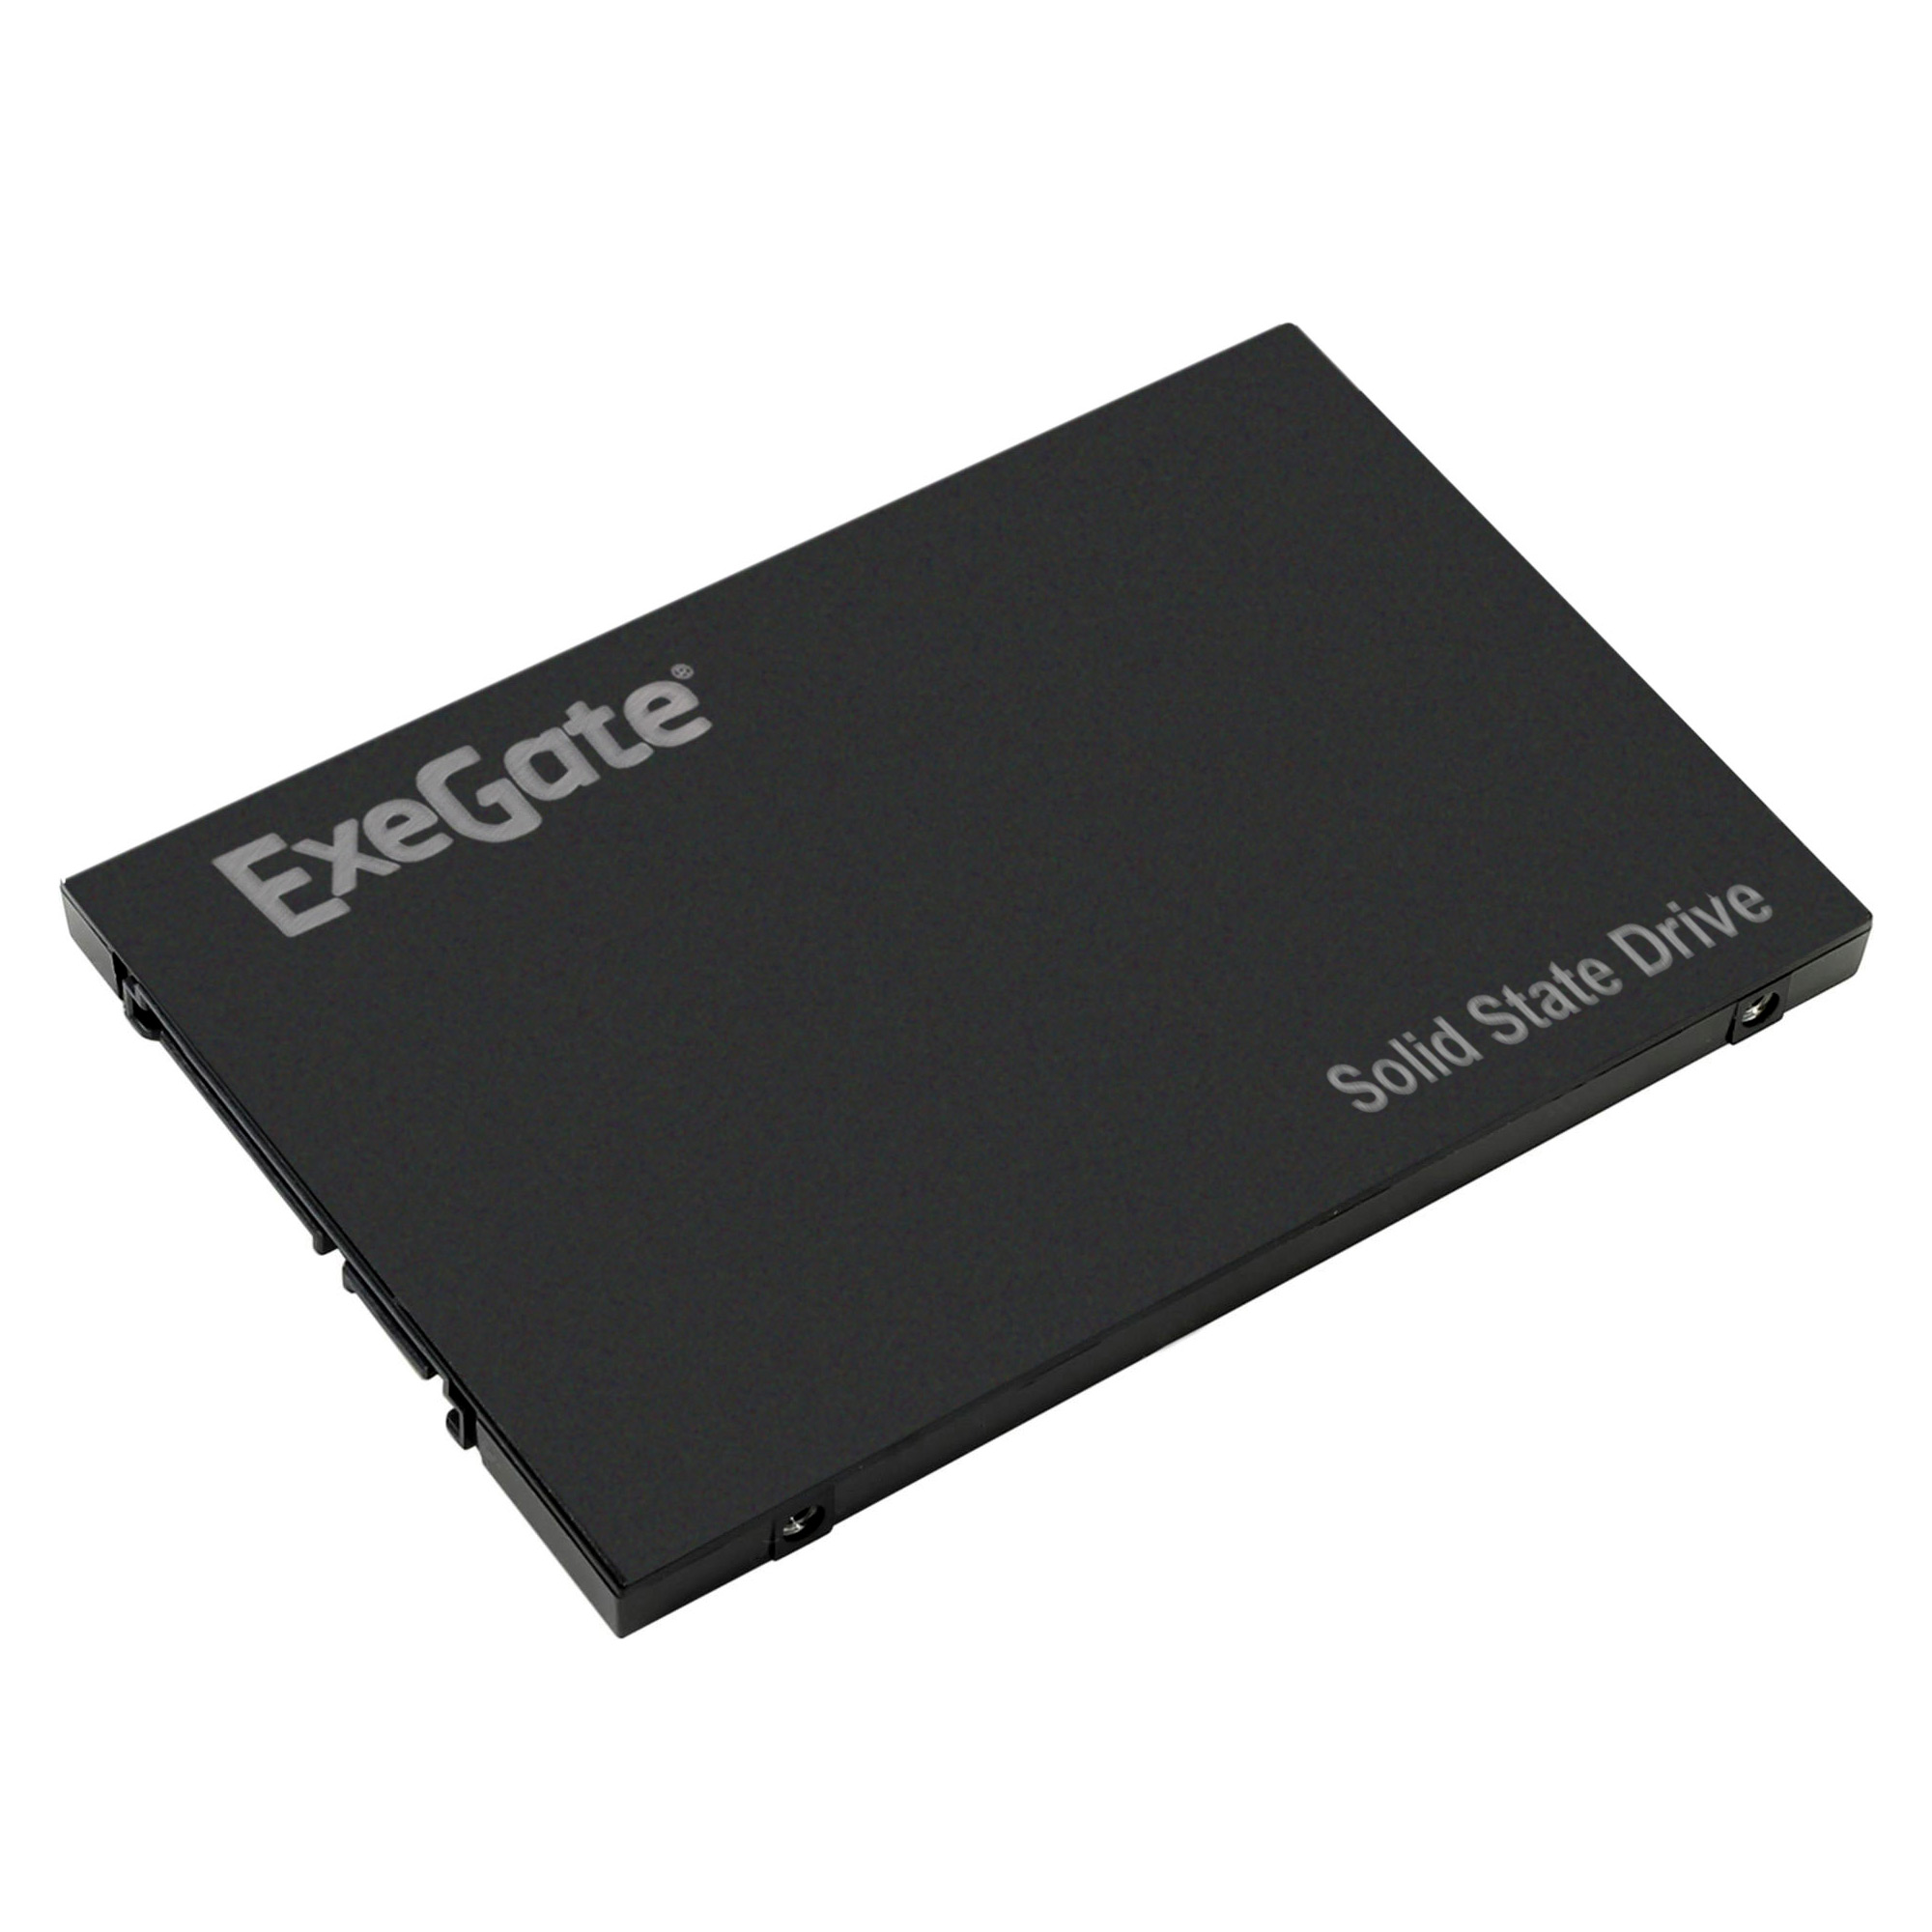 SSD Exegate 512Gb SATA3 (EX280463RUS)